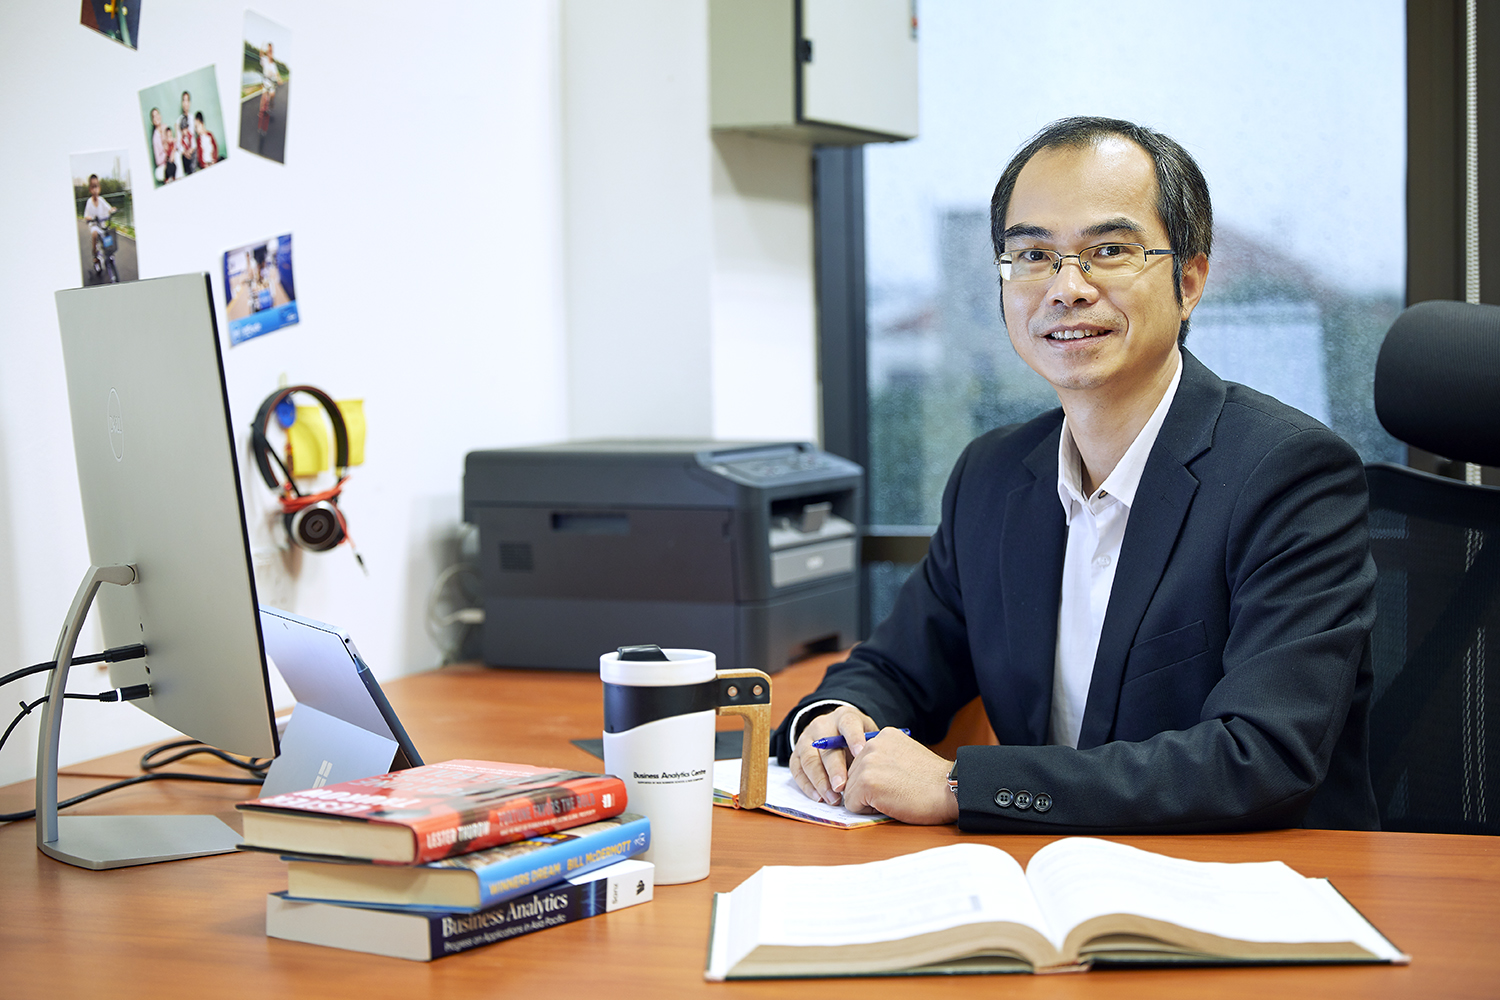 Associate Prof Pang